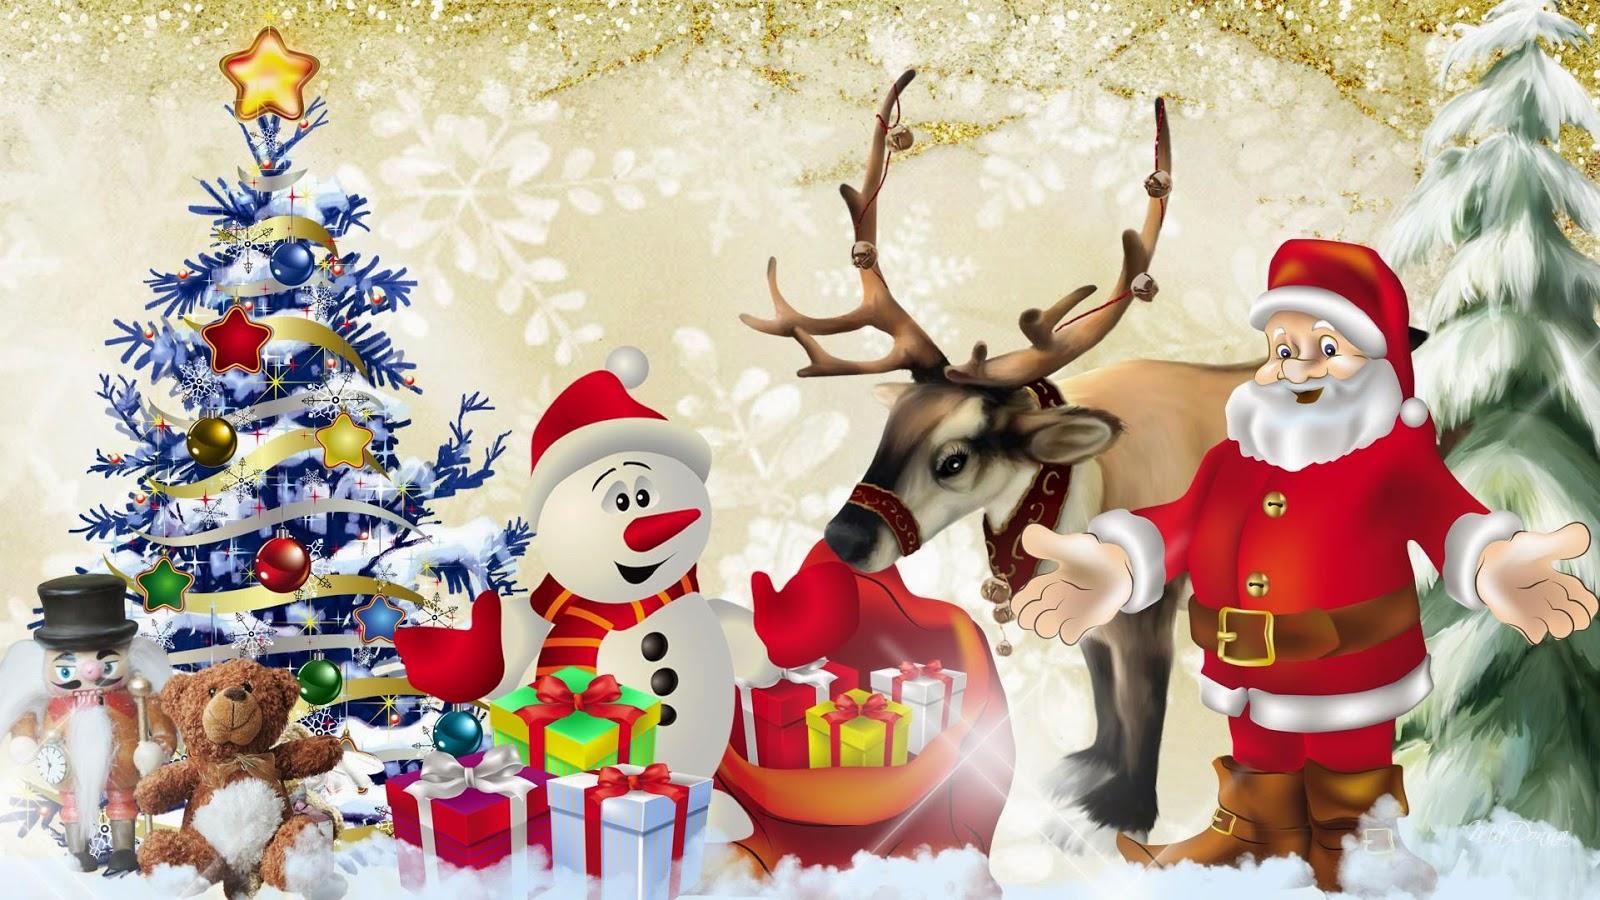 Reindeer Tree Wallpaper. Christmas Tree Wallpaper, Emoji Palm Tree Wallpaper and Great Tree Wallpaper